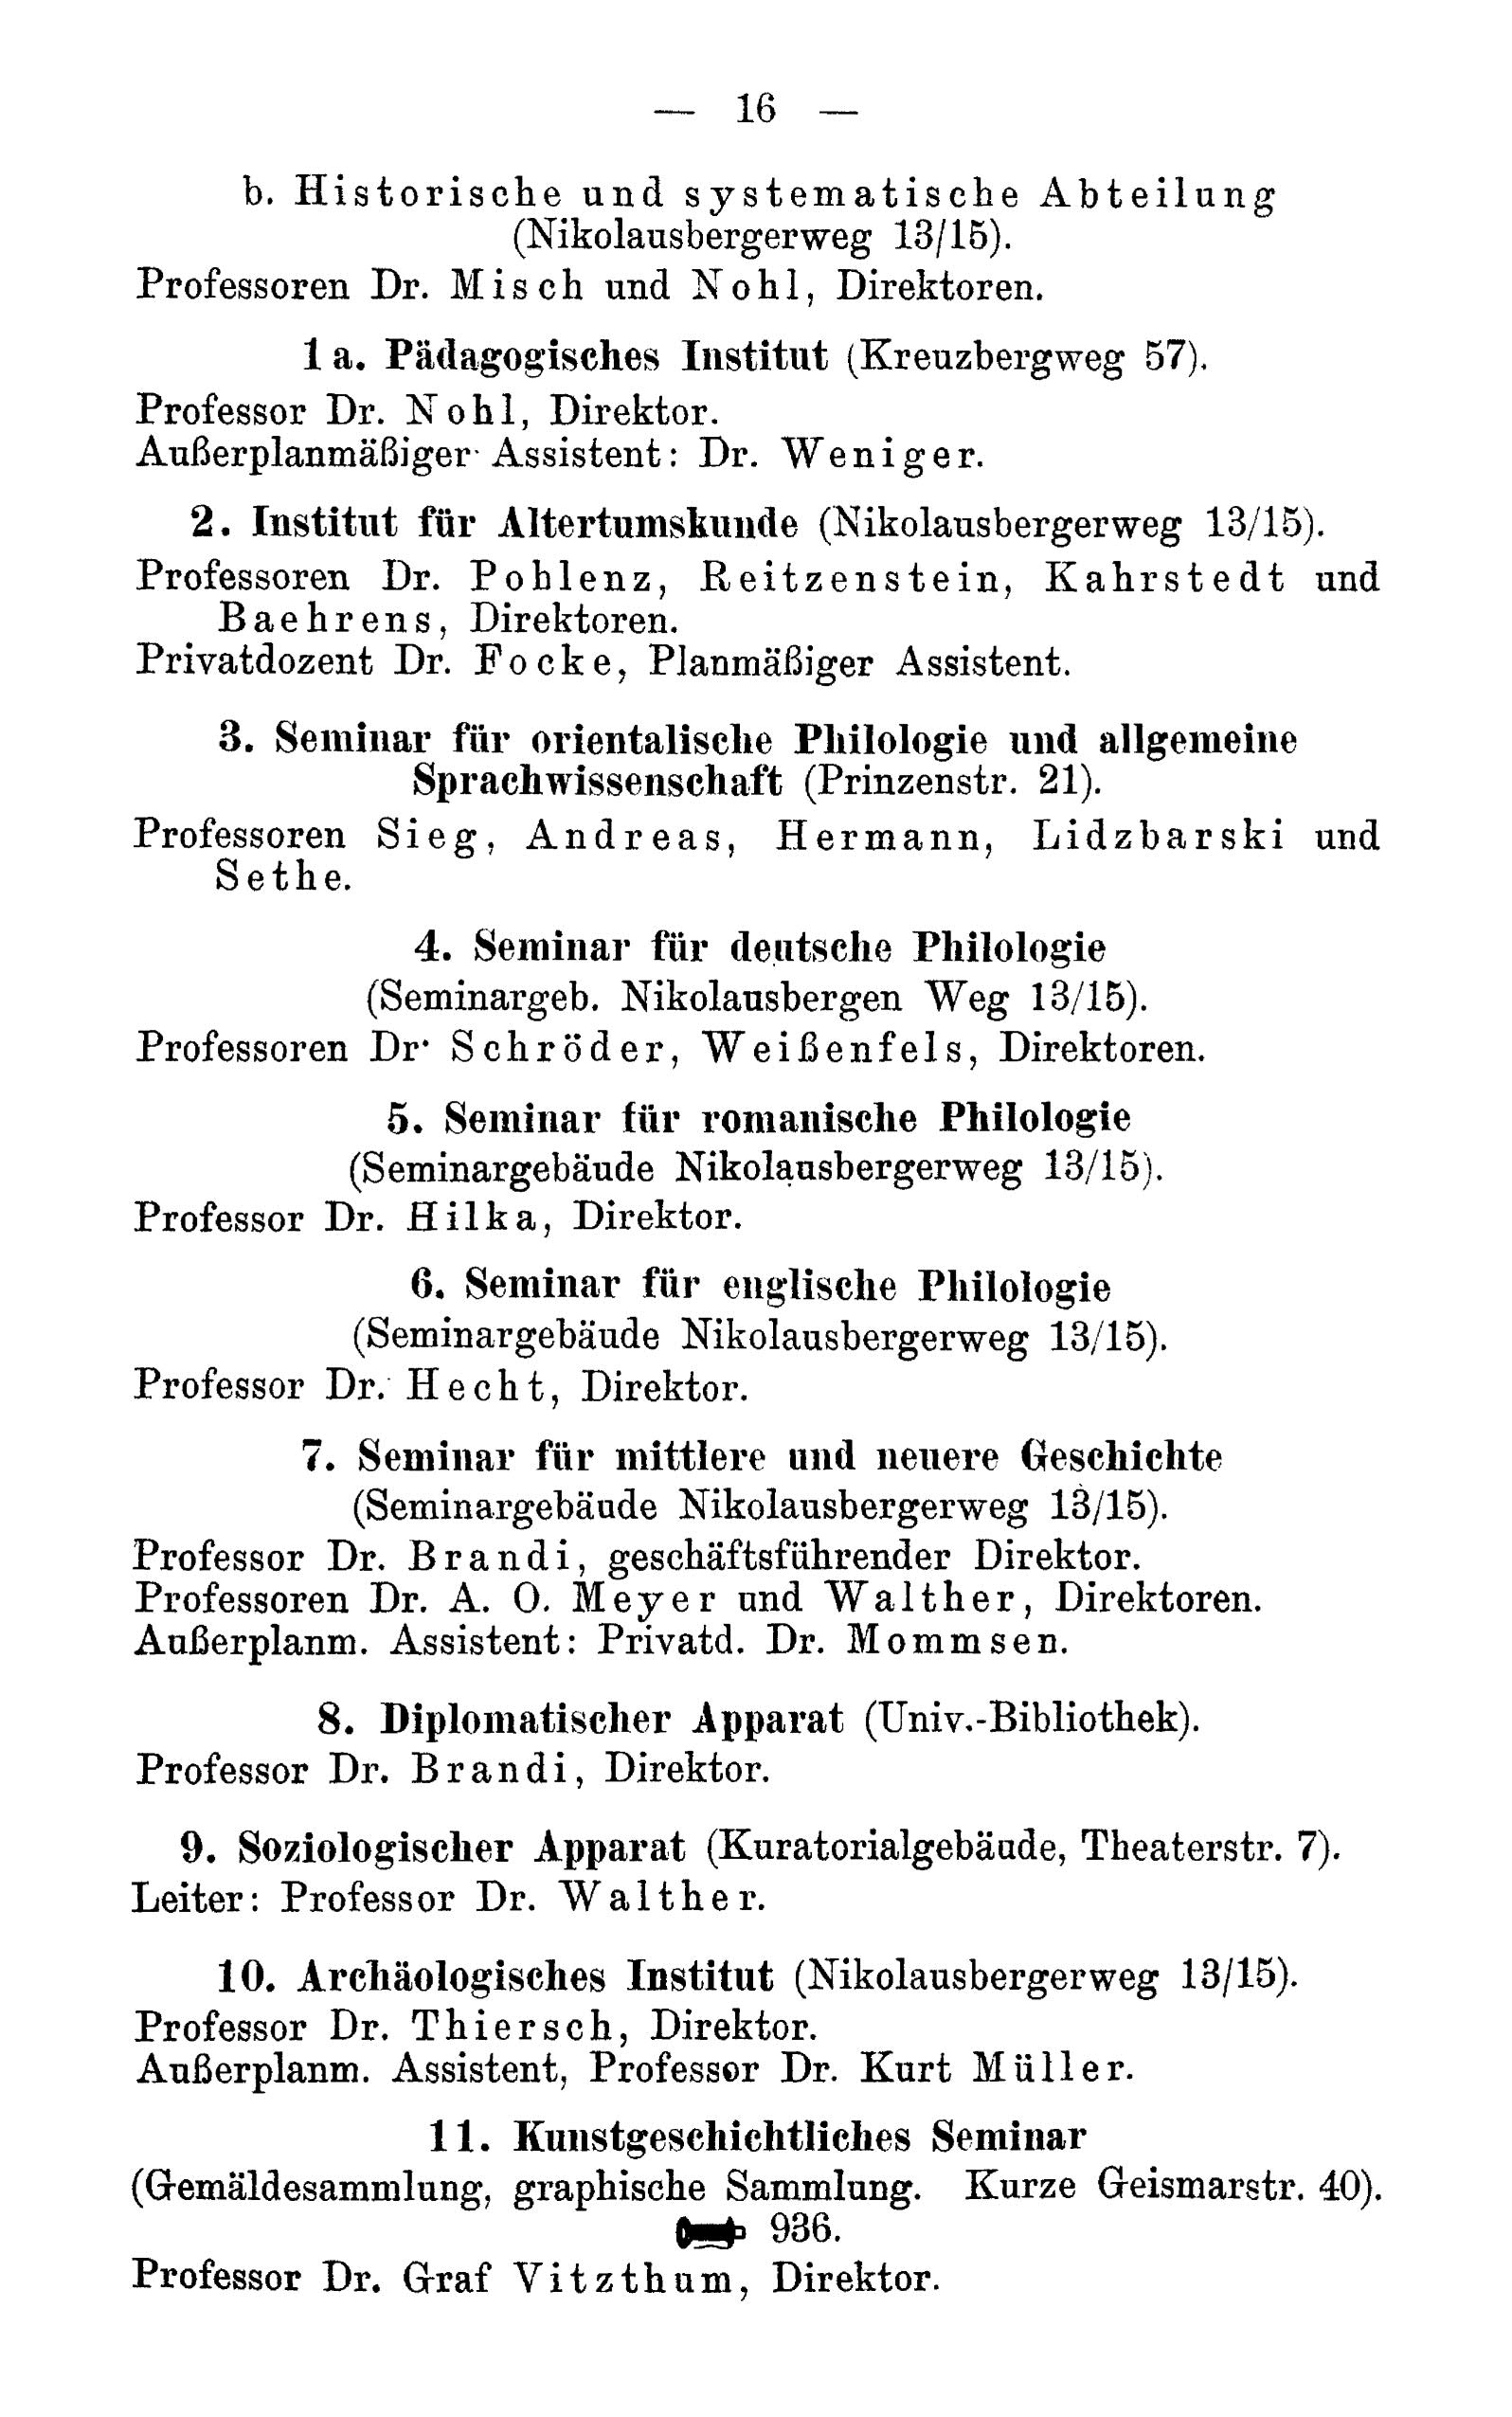 Das Pädagogische Seminar heißt nun Pädagogisches Institut. Quelle: Amtliches Namenverzeichnis Sommerhalbjahr 1923, Verzeichnis der Vorlesungen Winterhalbjahr 1923/24 der Universität Göttingen.